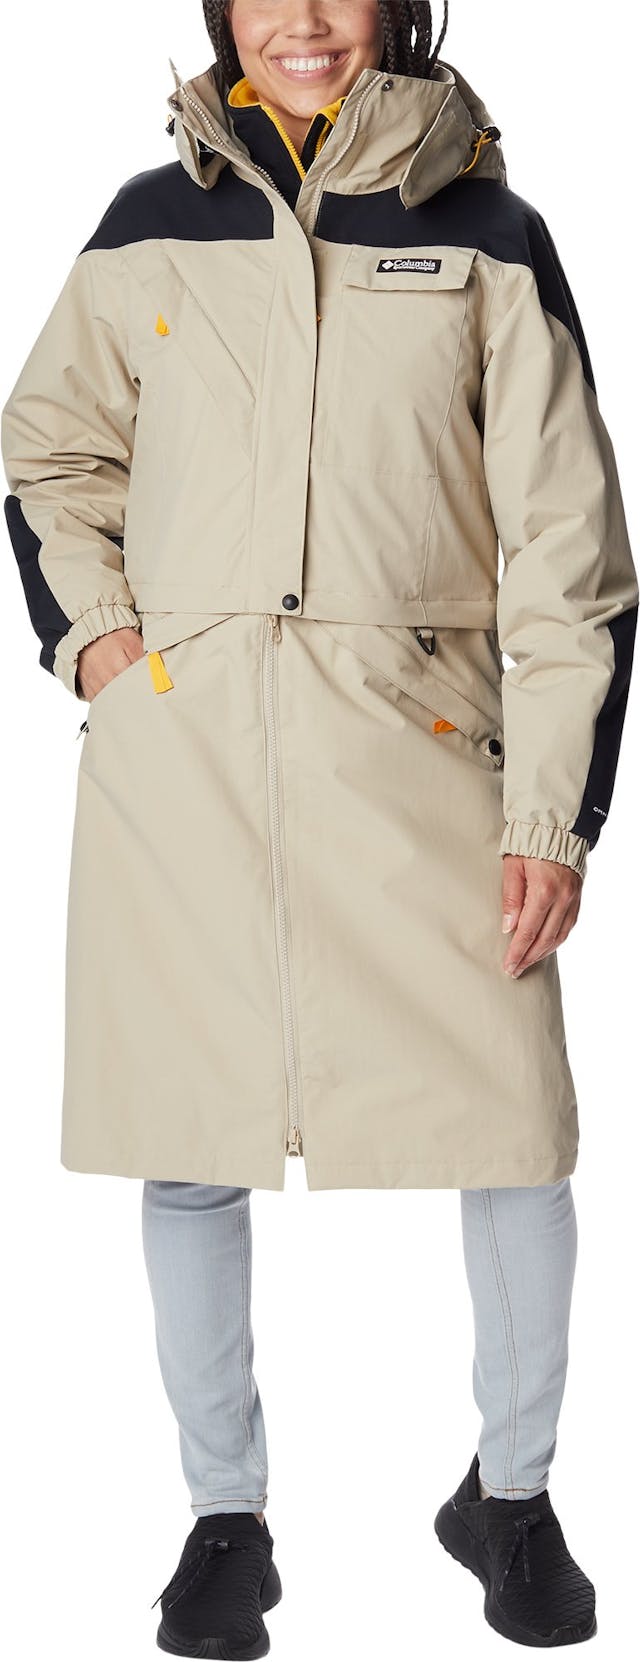 Product image for Ballistic Ridge Interchange Jacket - Women's